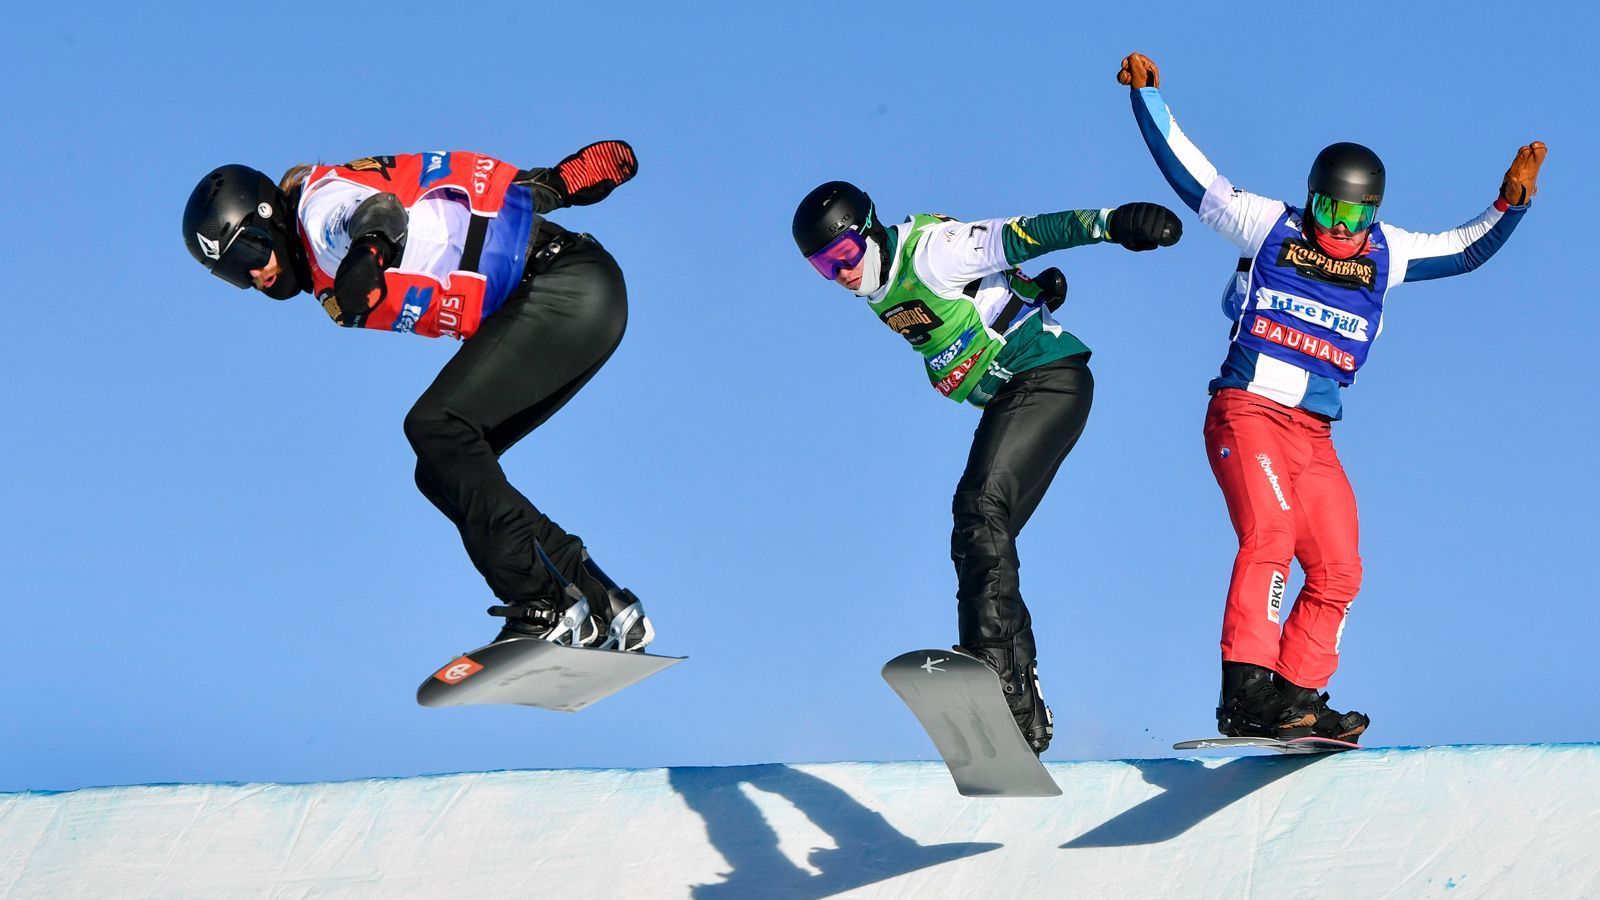 
                <strong>Snowboard: Mixed-Teamwettbewerb im Snowboardcross</strong><br>
                Die Sportart Snowboard ist bereits seit 1998 in mehreren Disziplinen olympisch. Insgesamt sollen in Peking elf Wettkämpfe ausgetragen werden. Neben je fünf Entscheidungen in Einzelwettkämpfen (Big Air, Halfpipe, Slopestyle, Parallel-Riesenslalom, Snowboardcross) bei den Männern und Frauen wird auch erstmals im Snowboardcross ein Mixed-Mannschaftswettbewerb Teil des olympischen Programms sein. Insgesamt werden rund 238 Athleten an den Wettkämpfen im Snowboard teilnehmen. 
              